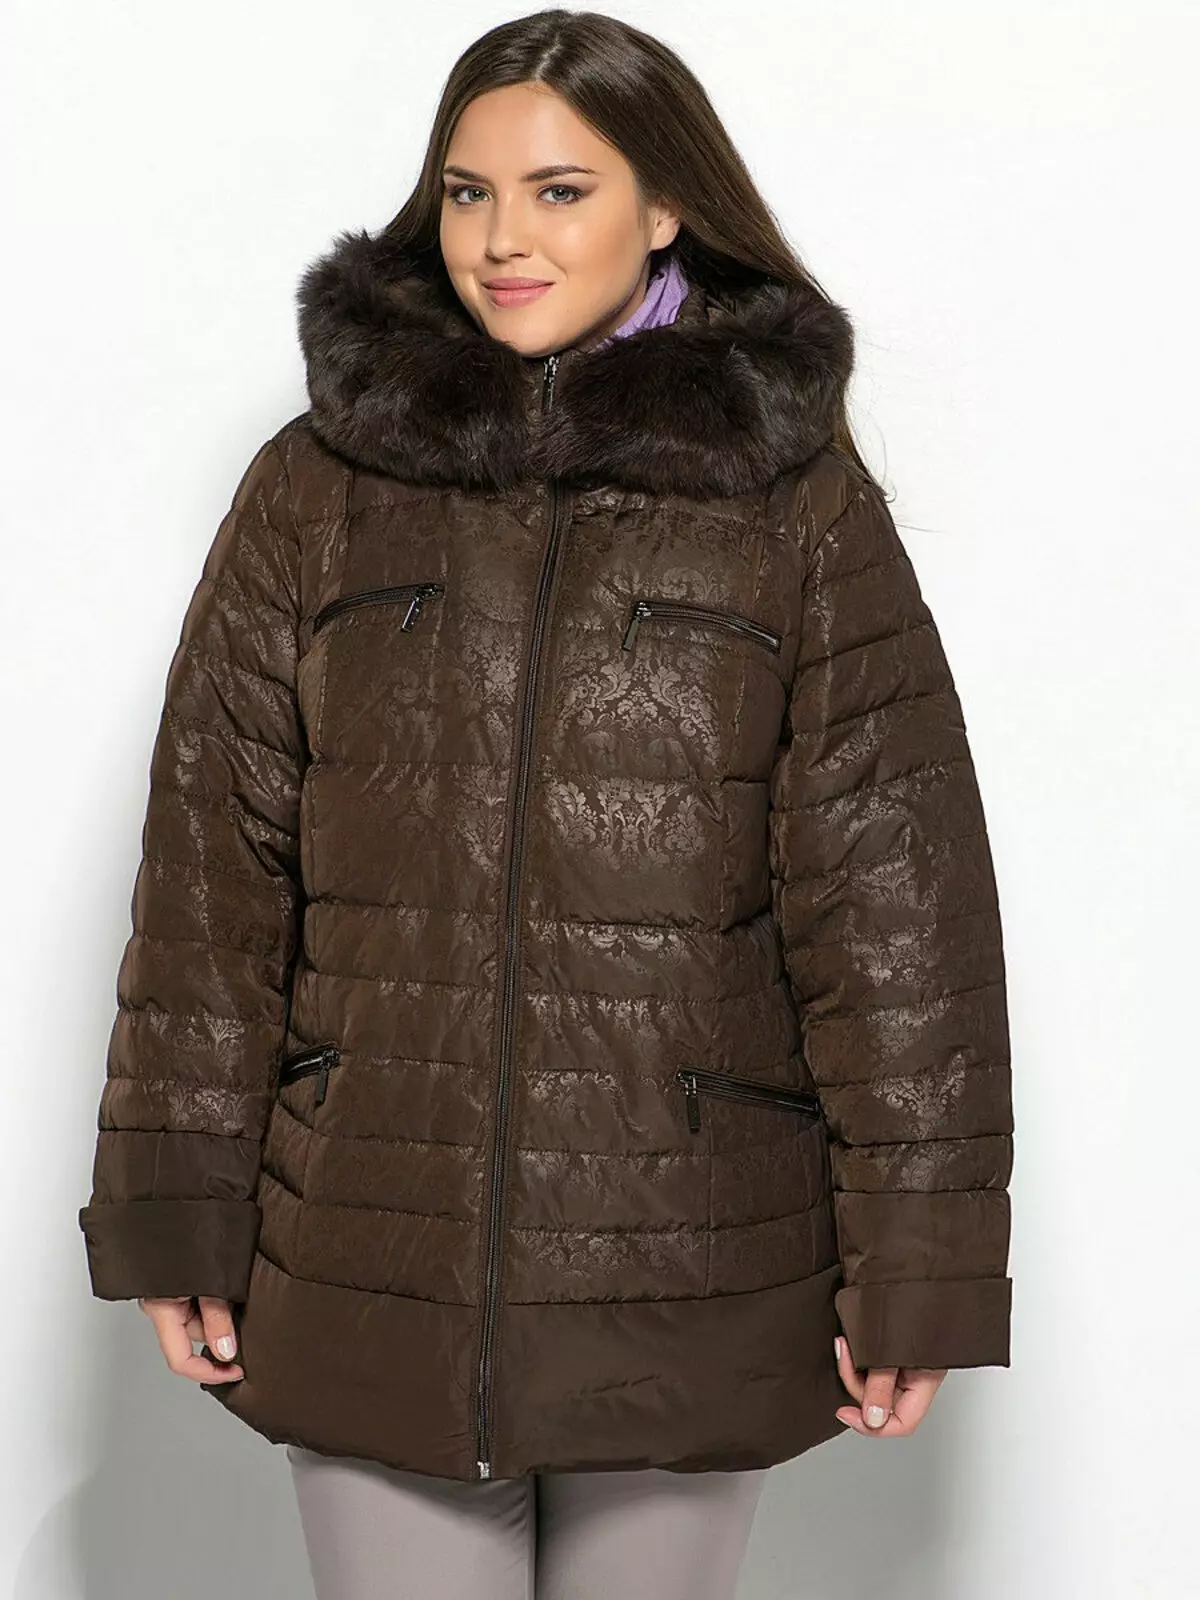 Women's Coat Jacket (160 foto's): Van Finland Coat Jacket Transformer, Trendy 2021, Bas met 'n baadjie binne, verkort 520_59